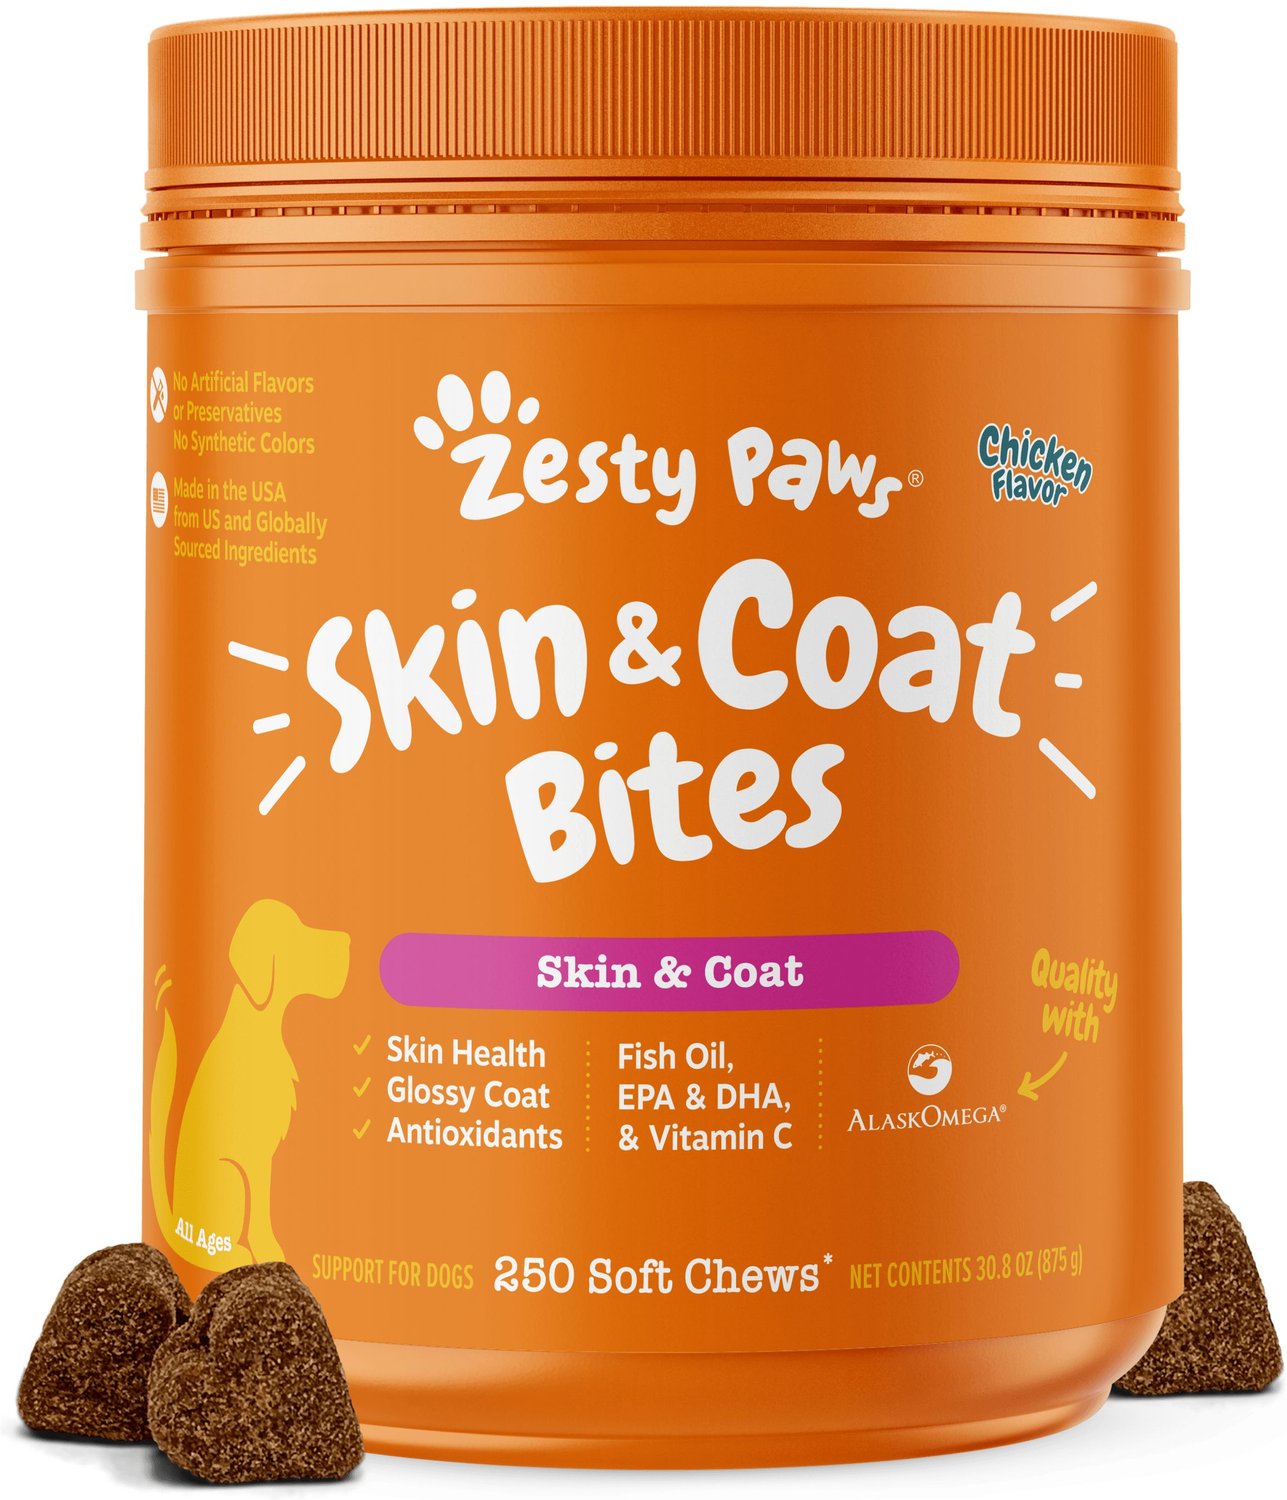 zesty paws omega bites skin & coat